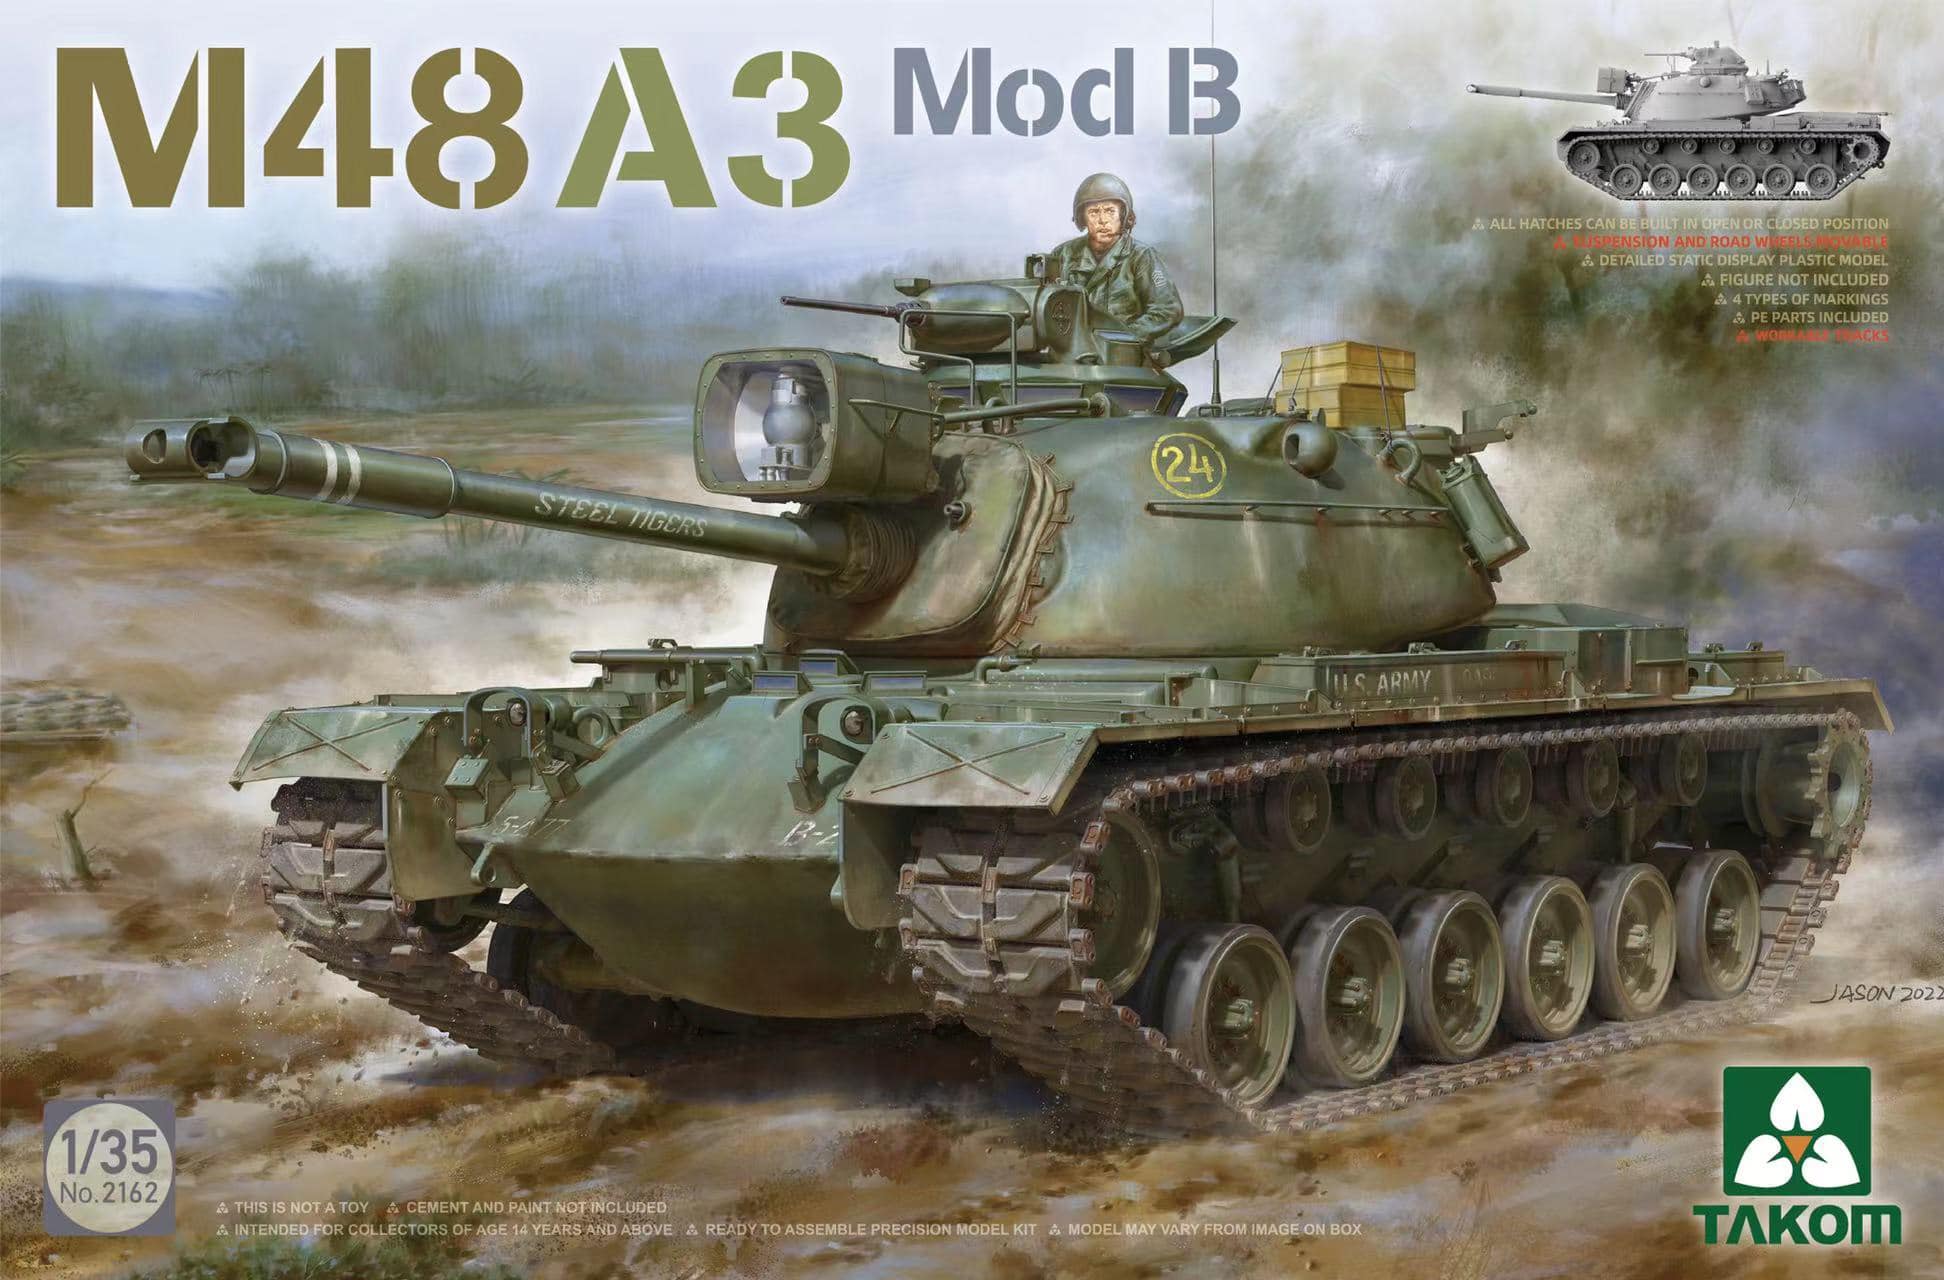 M48A3 Mod. B Patton